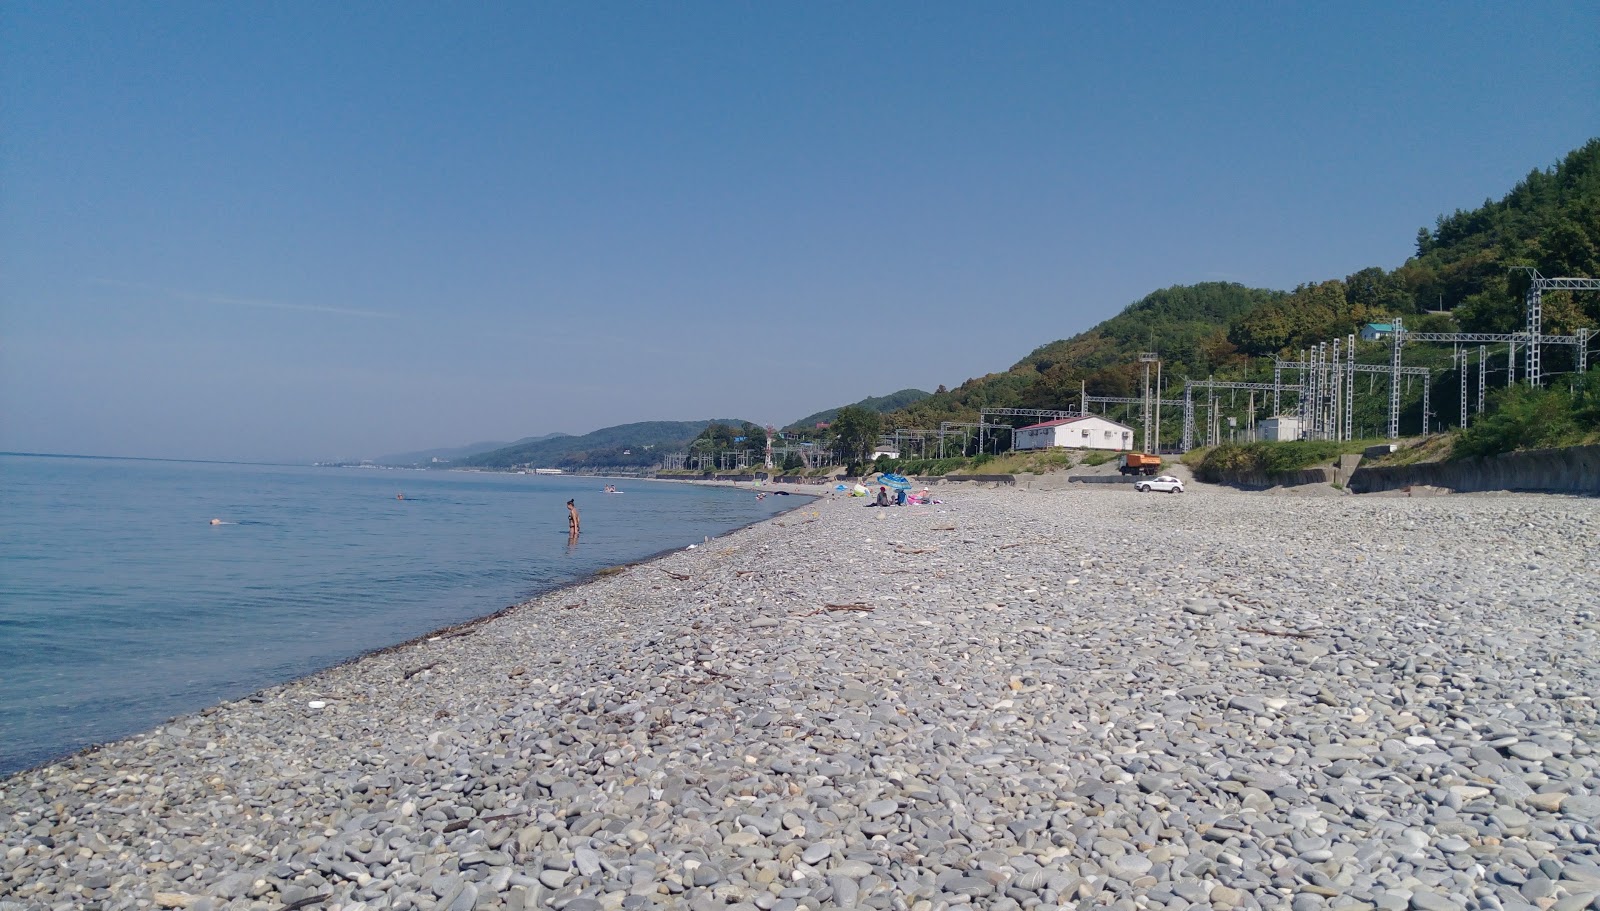 Katkova Shchel beach'in fotoğrafı çok temiz temizlik seviyesi ile